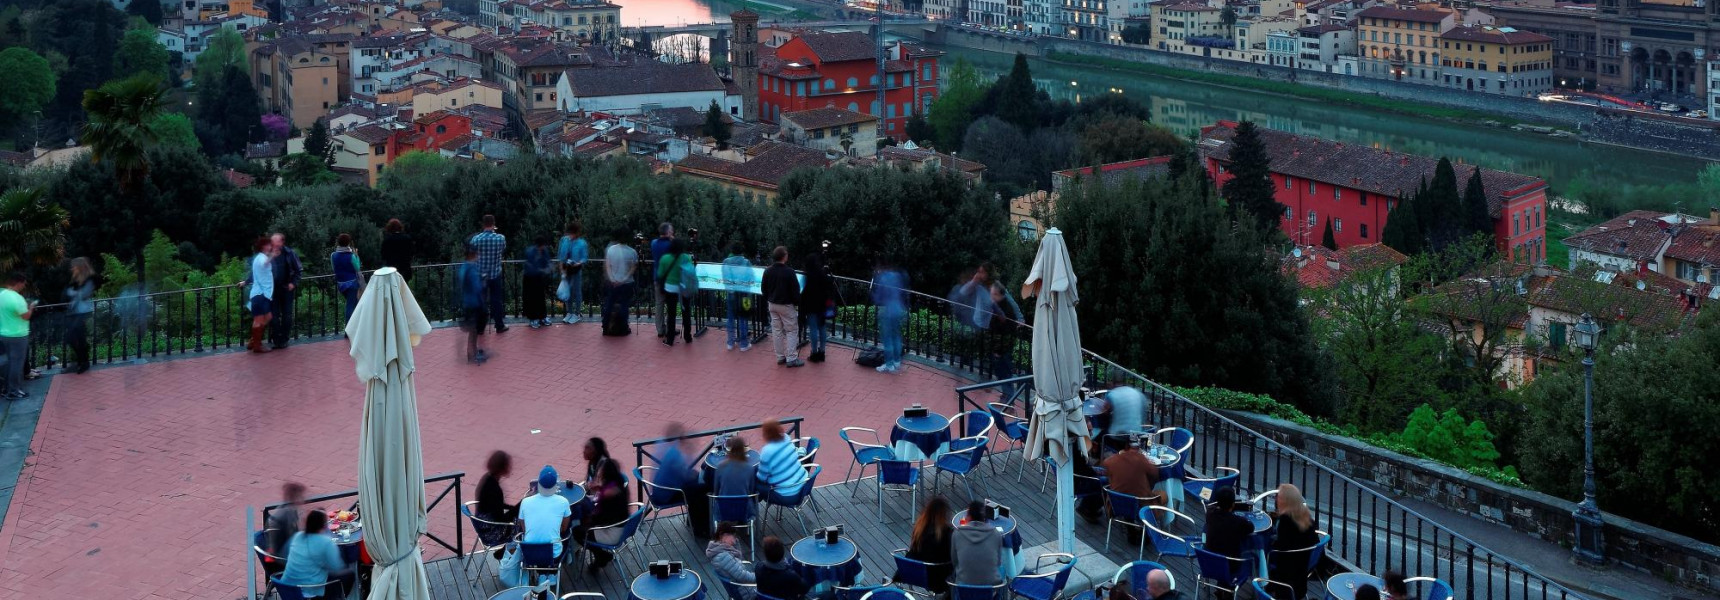 Top 5 Italian Restaurants in Florence